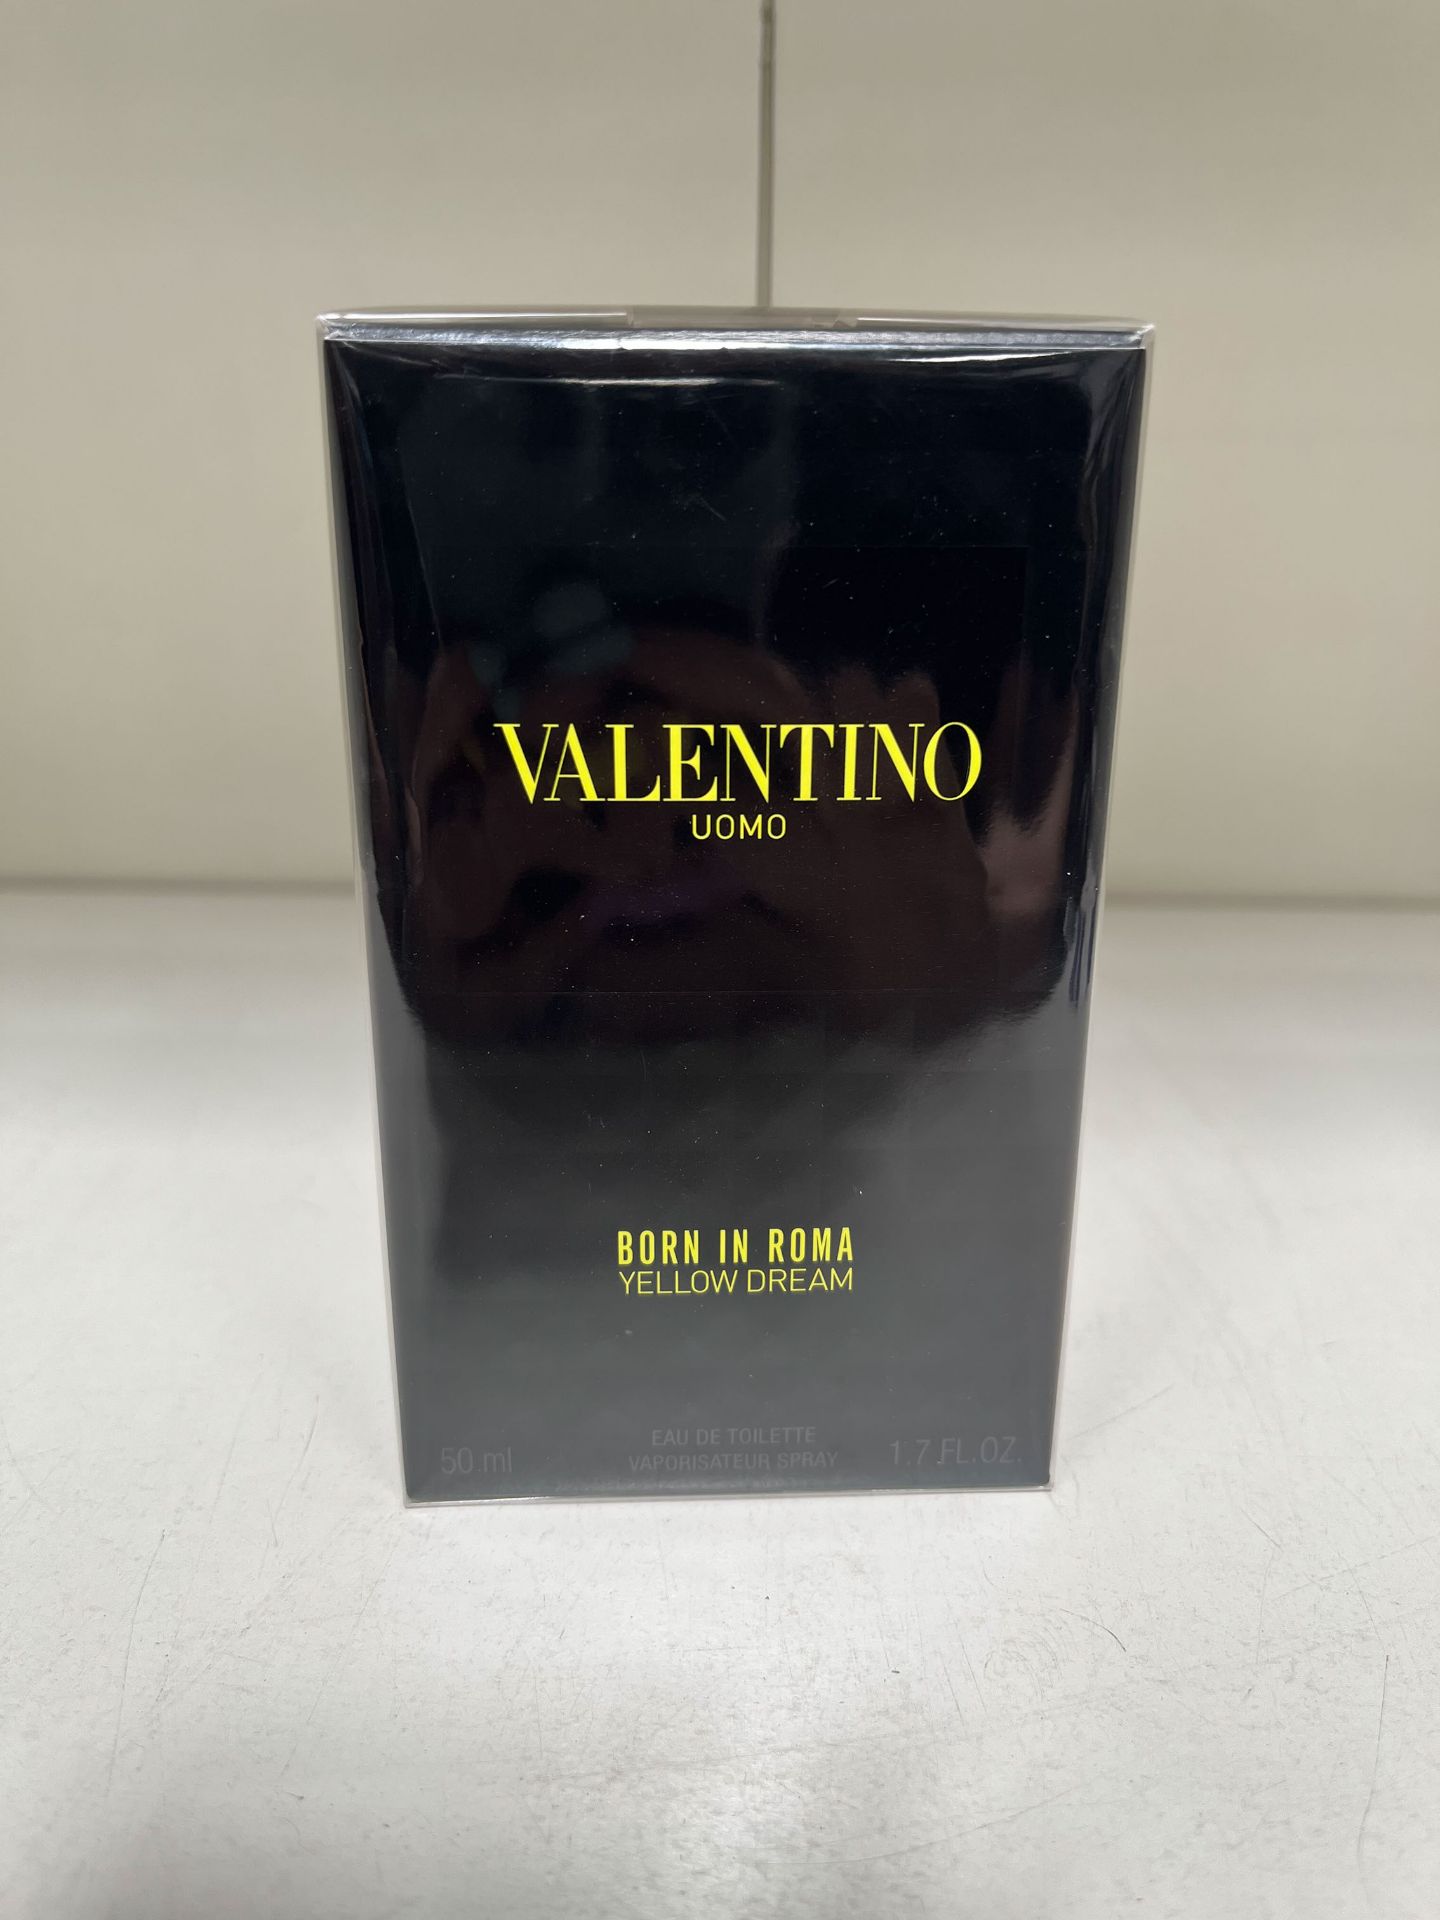 1x 50ml Valentino Uomo Born in Roma Yellow Dream Spray